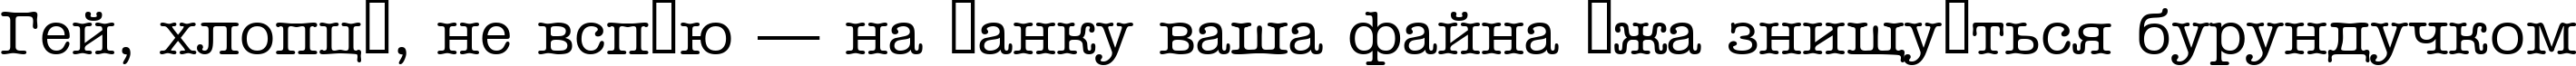 Пример написания шрифтом a_OldTyper текста на украинском